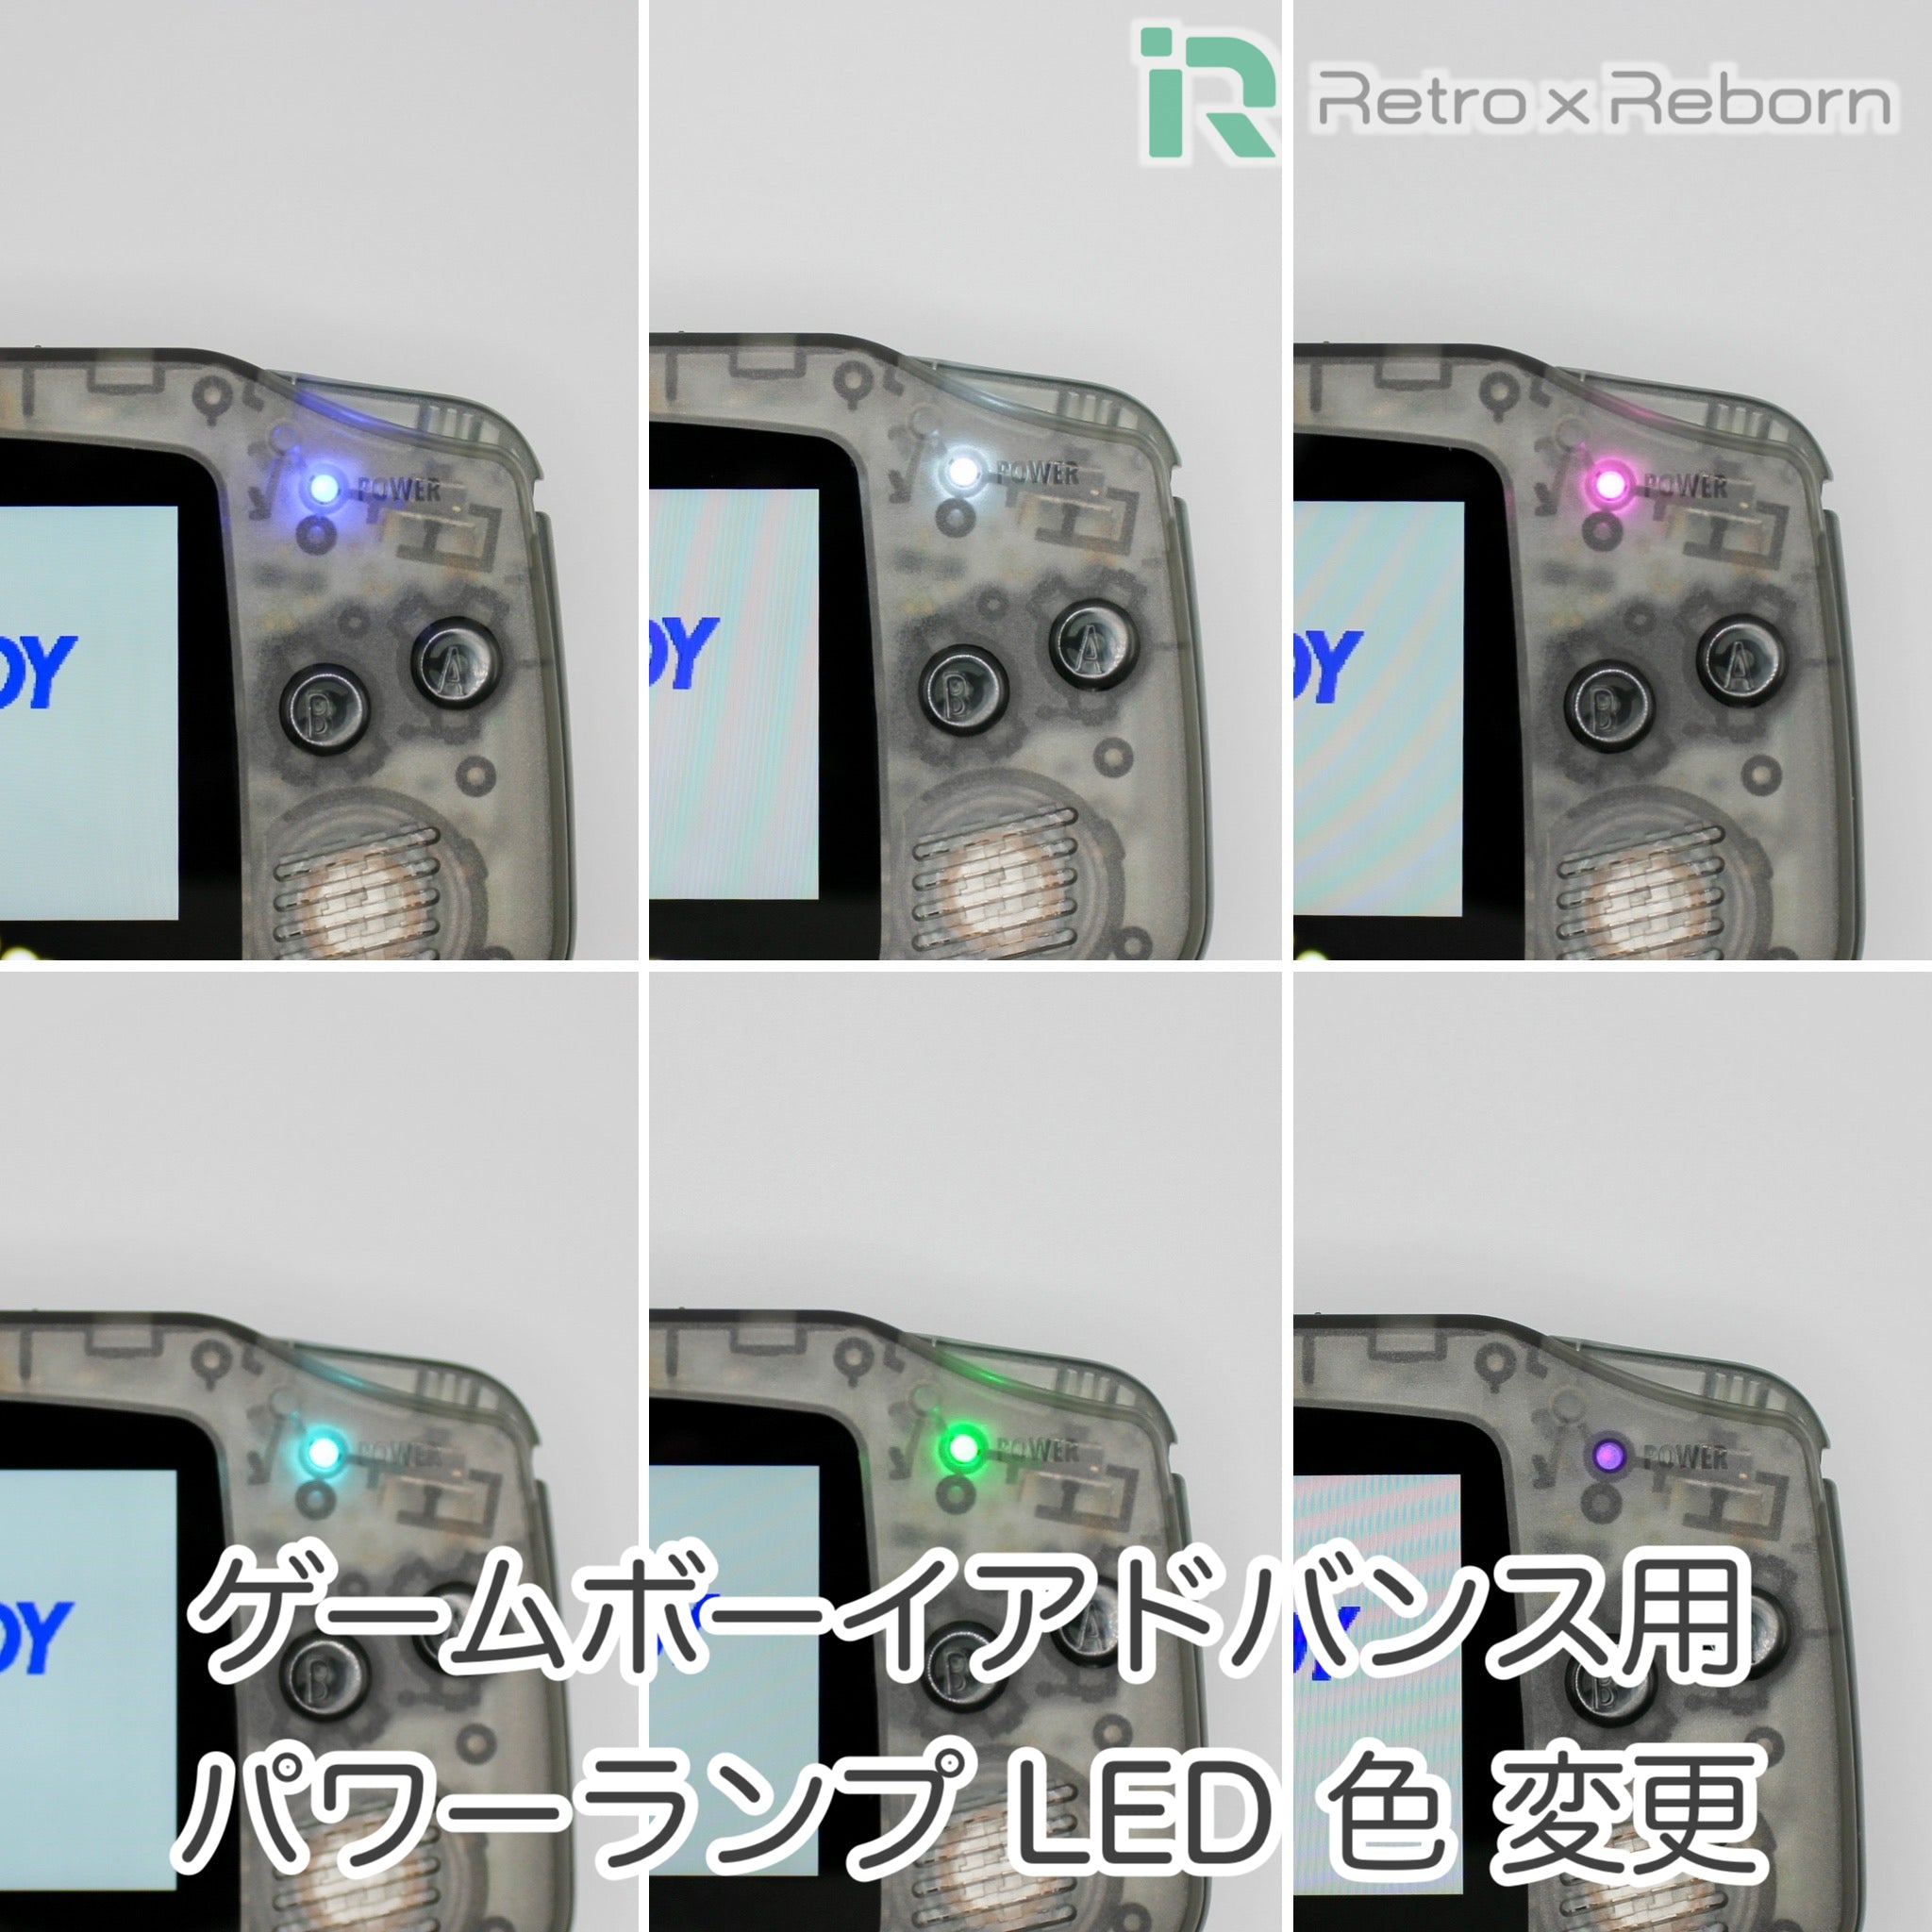 ゲームボーイアドバンス用 パワーランプ LED 色 変更 – Retro x Reborn